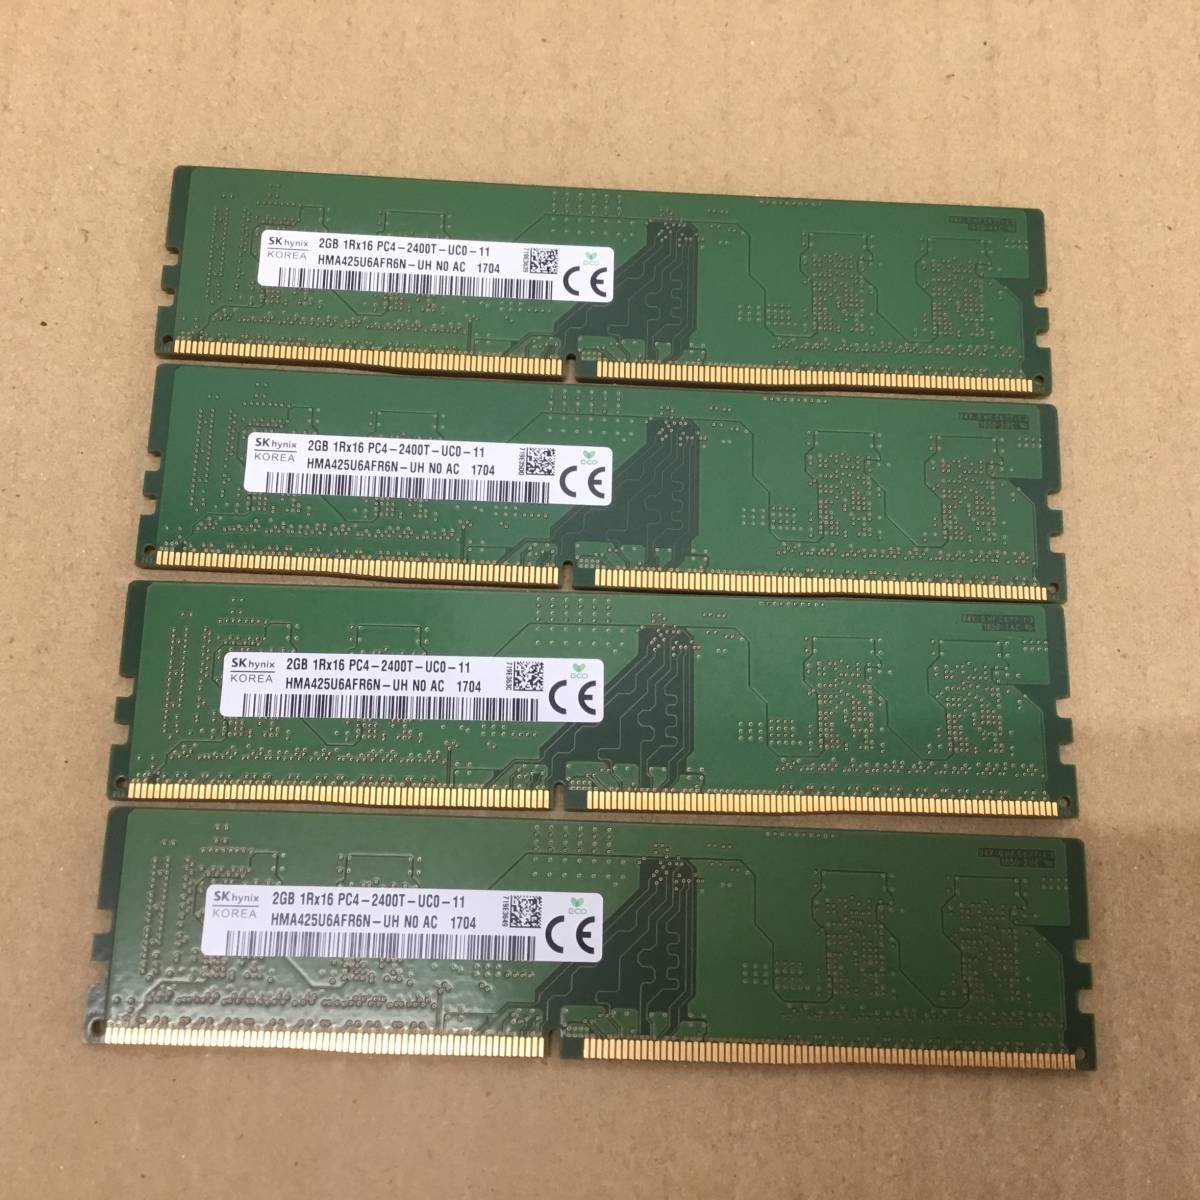 【2311291001】SK HYNIX デスクトップPC用メモリ 8GB(2GB×4枚) 1Rx16 PC4-2400T-UC0-11メモリ 1点 (DDR4-2400) DIMM 288pin 増設メモリ_画像1